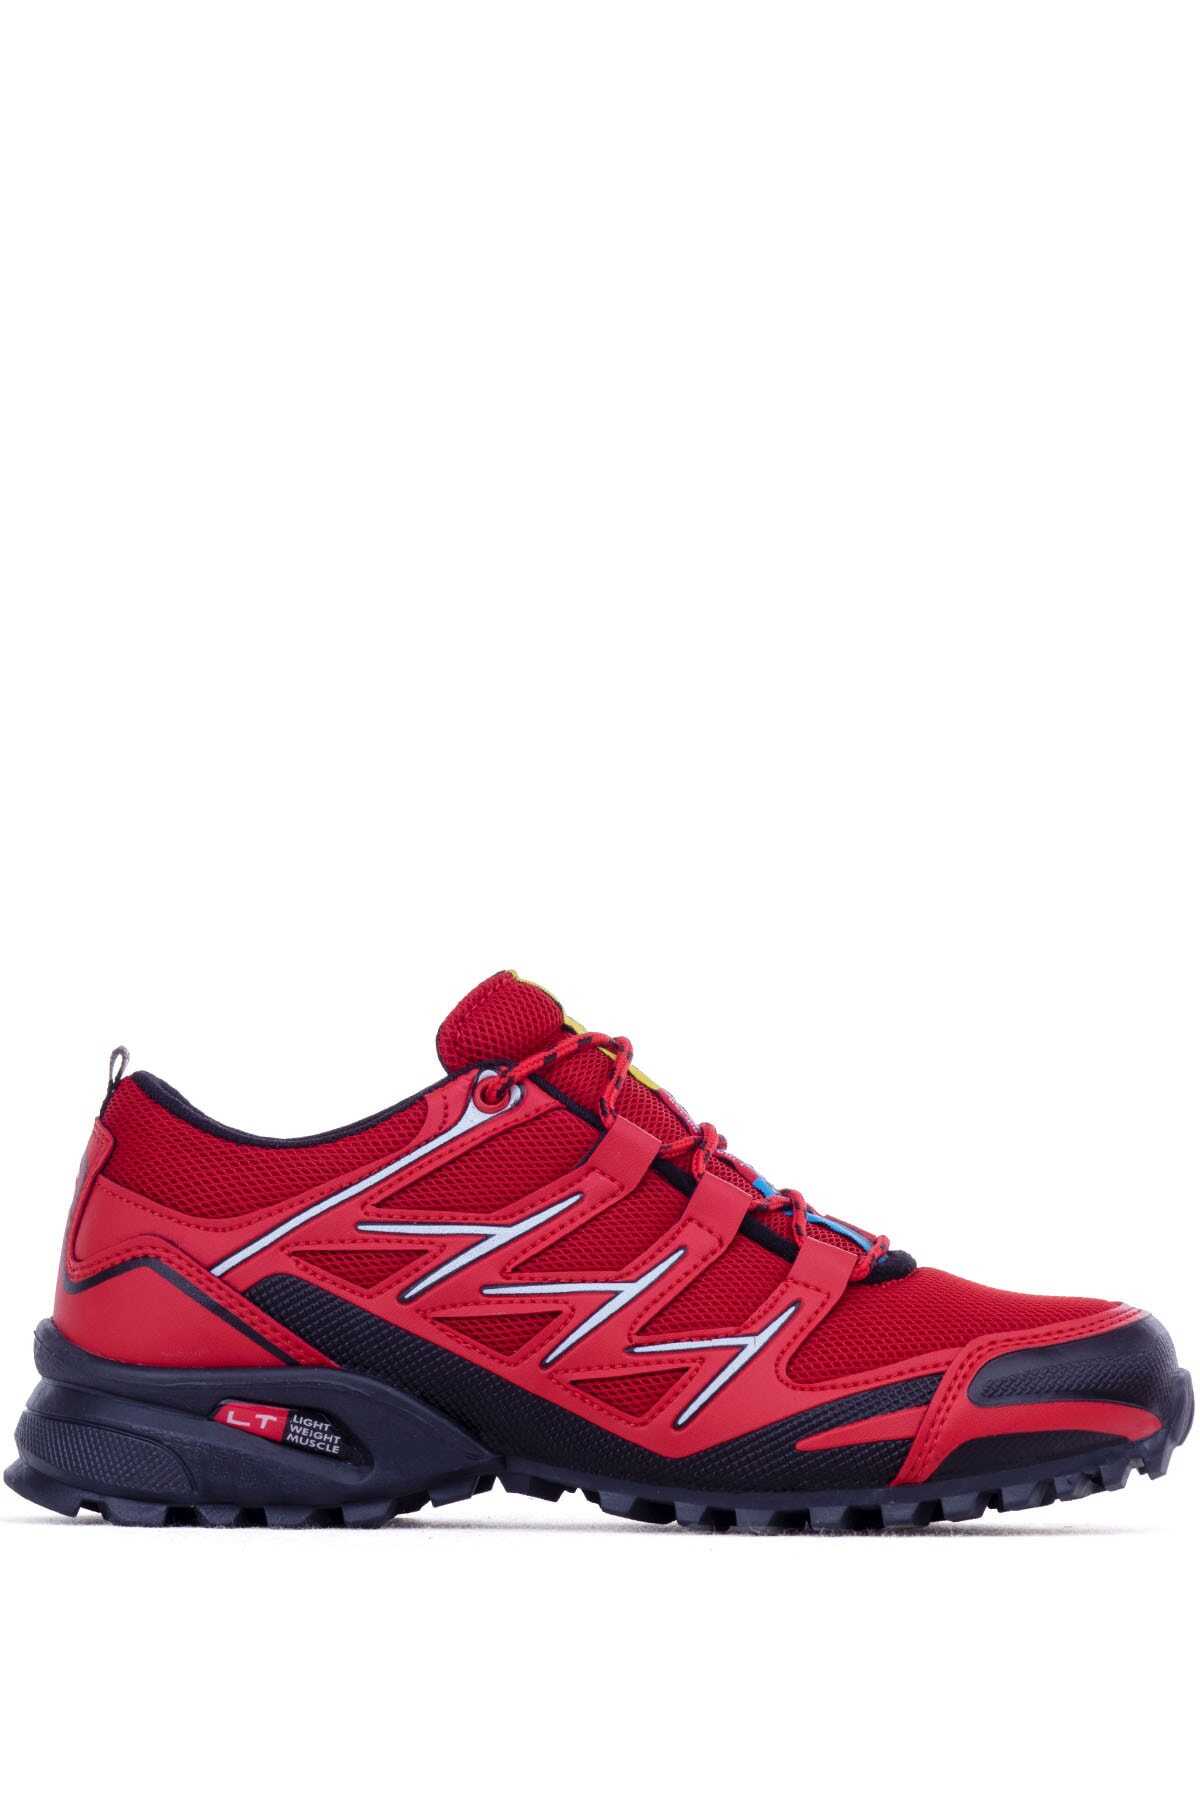 کفش ورزشی مردانه قرمز برند Ghattix 